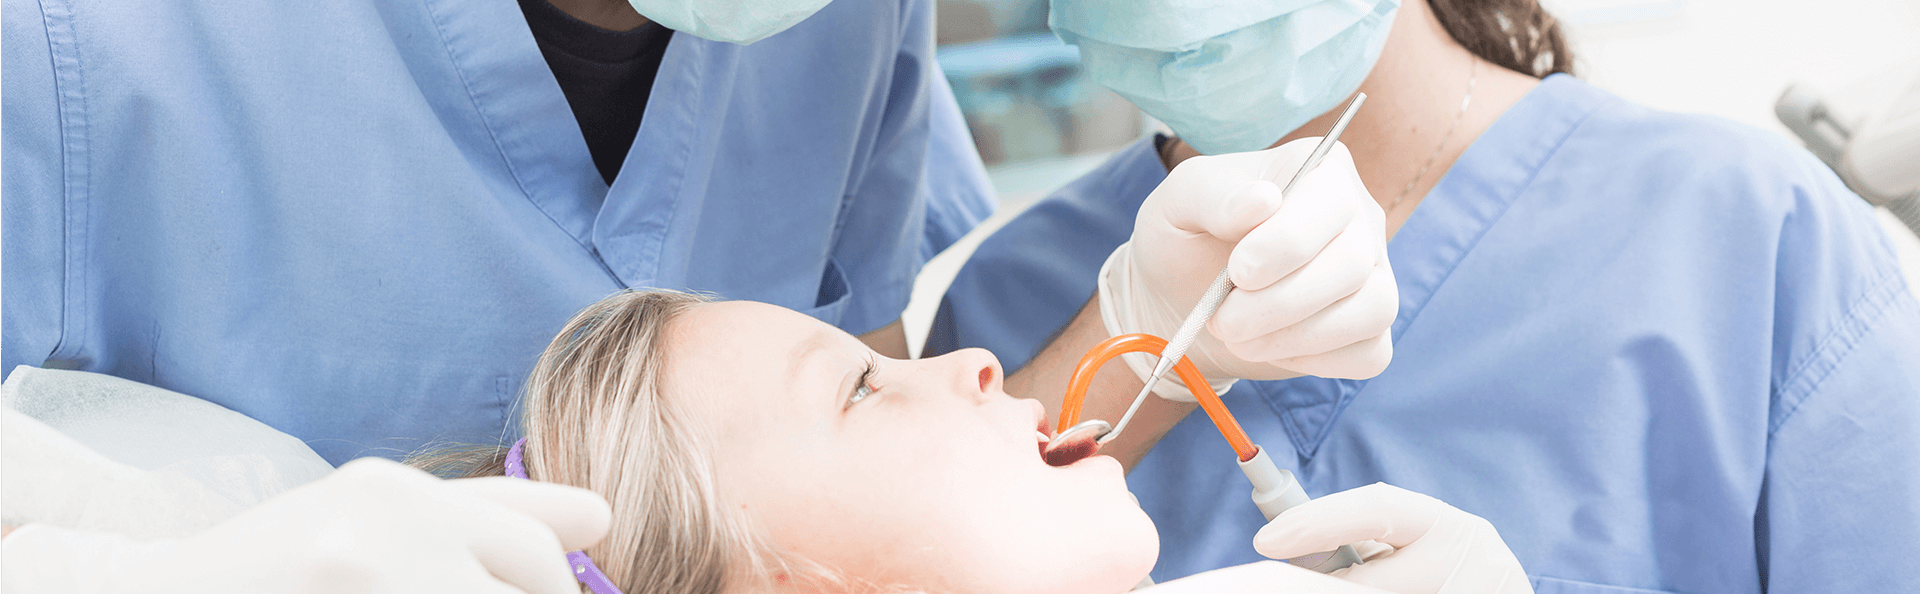 Stomatolog w trakcie zabiegu dentystycznego